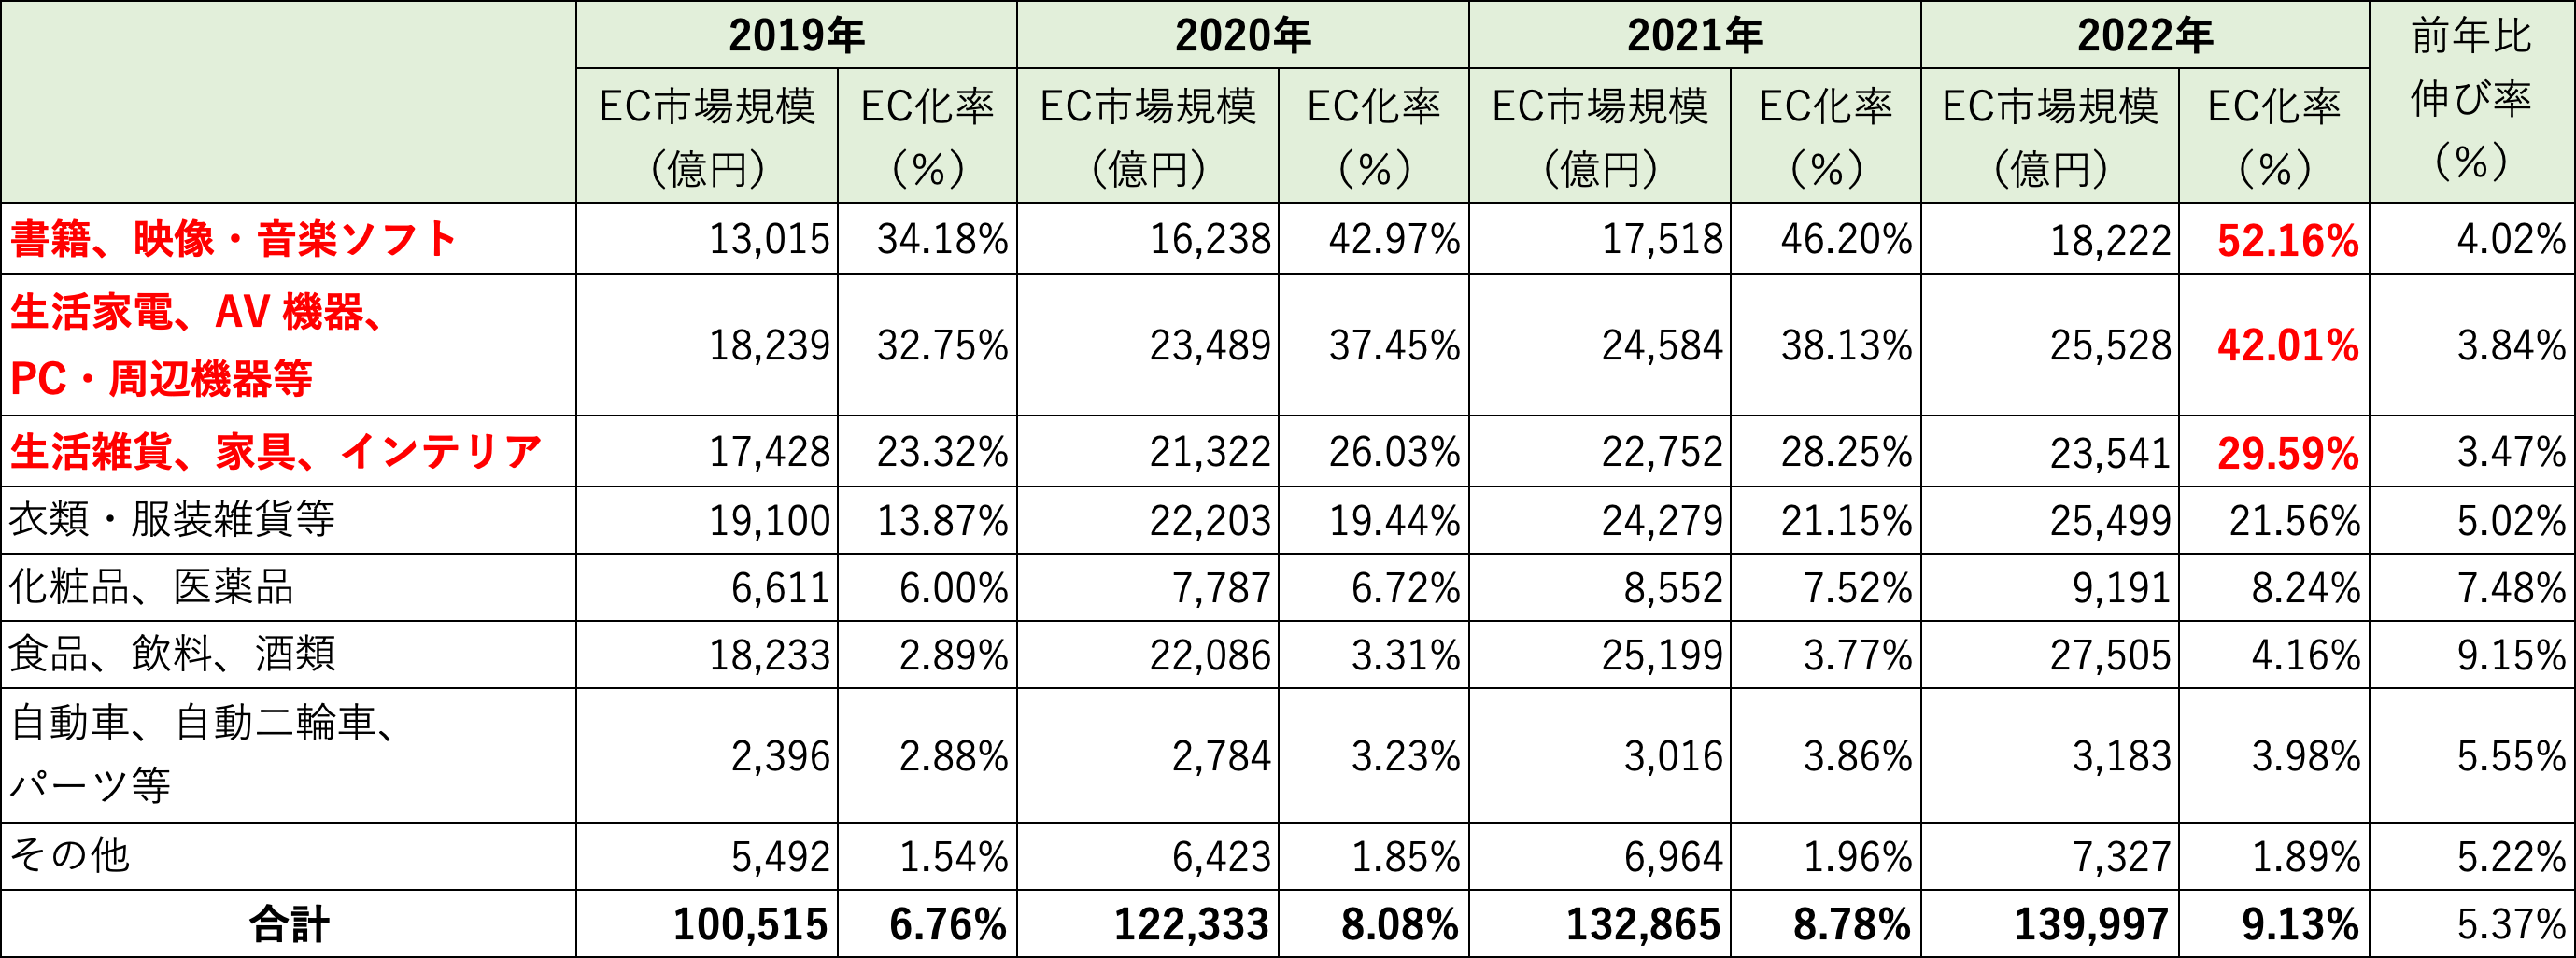 国内業界別の物販のEC化率比較（2019-2022）